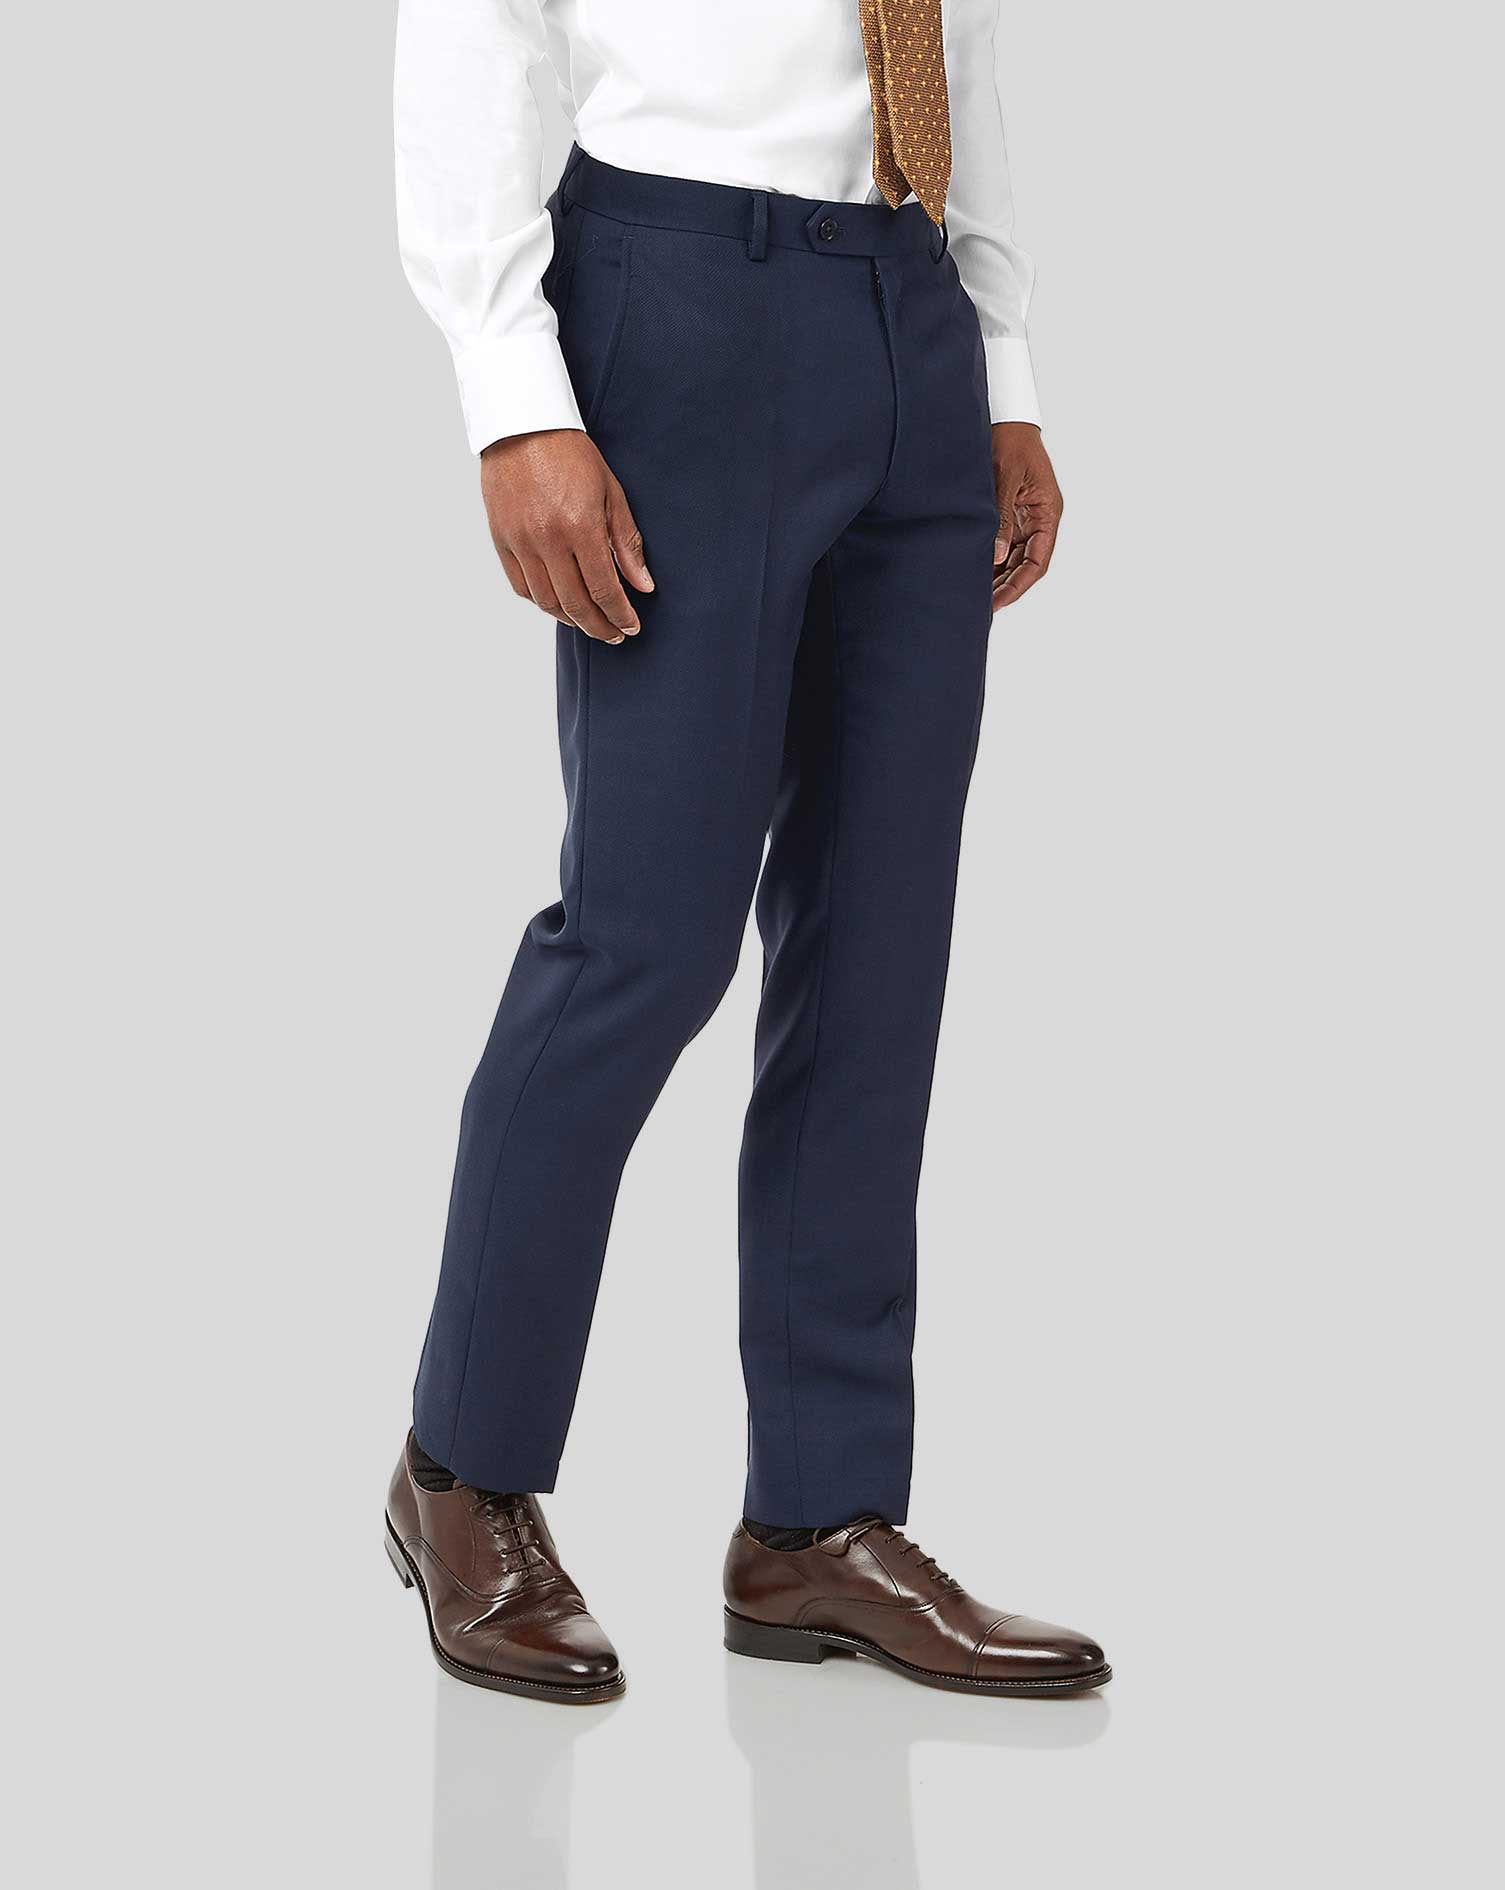 Men's Charles Tyrwhitt Birdseye Travel Suit Trousers - Ink Blue Size 38/38 Wool
